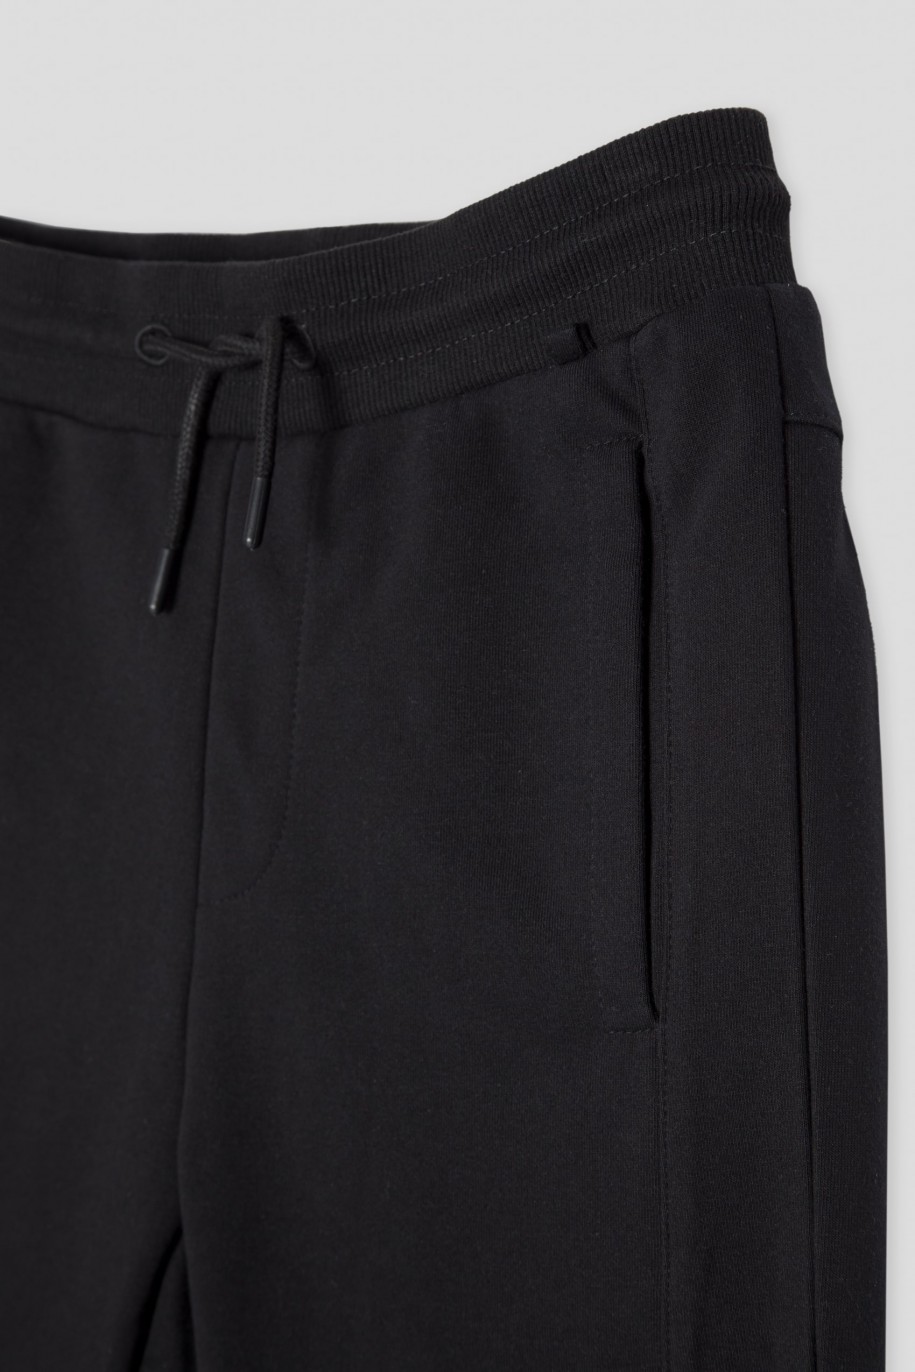 Czarne spodnie dresowe z odpinanym łańcuchem - 45199